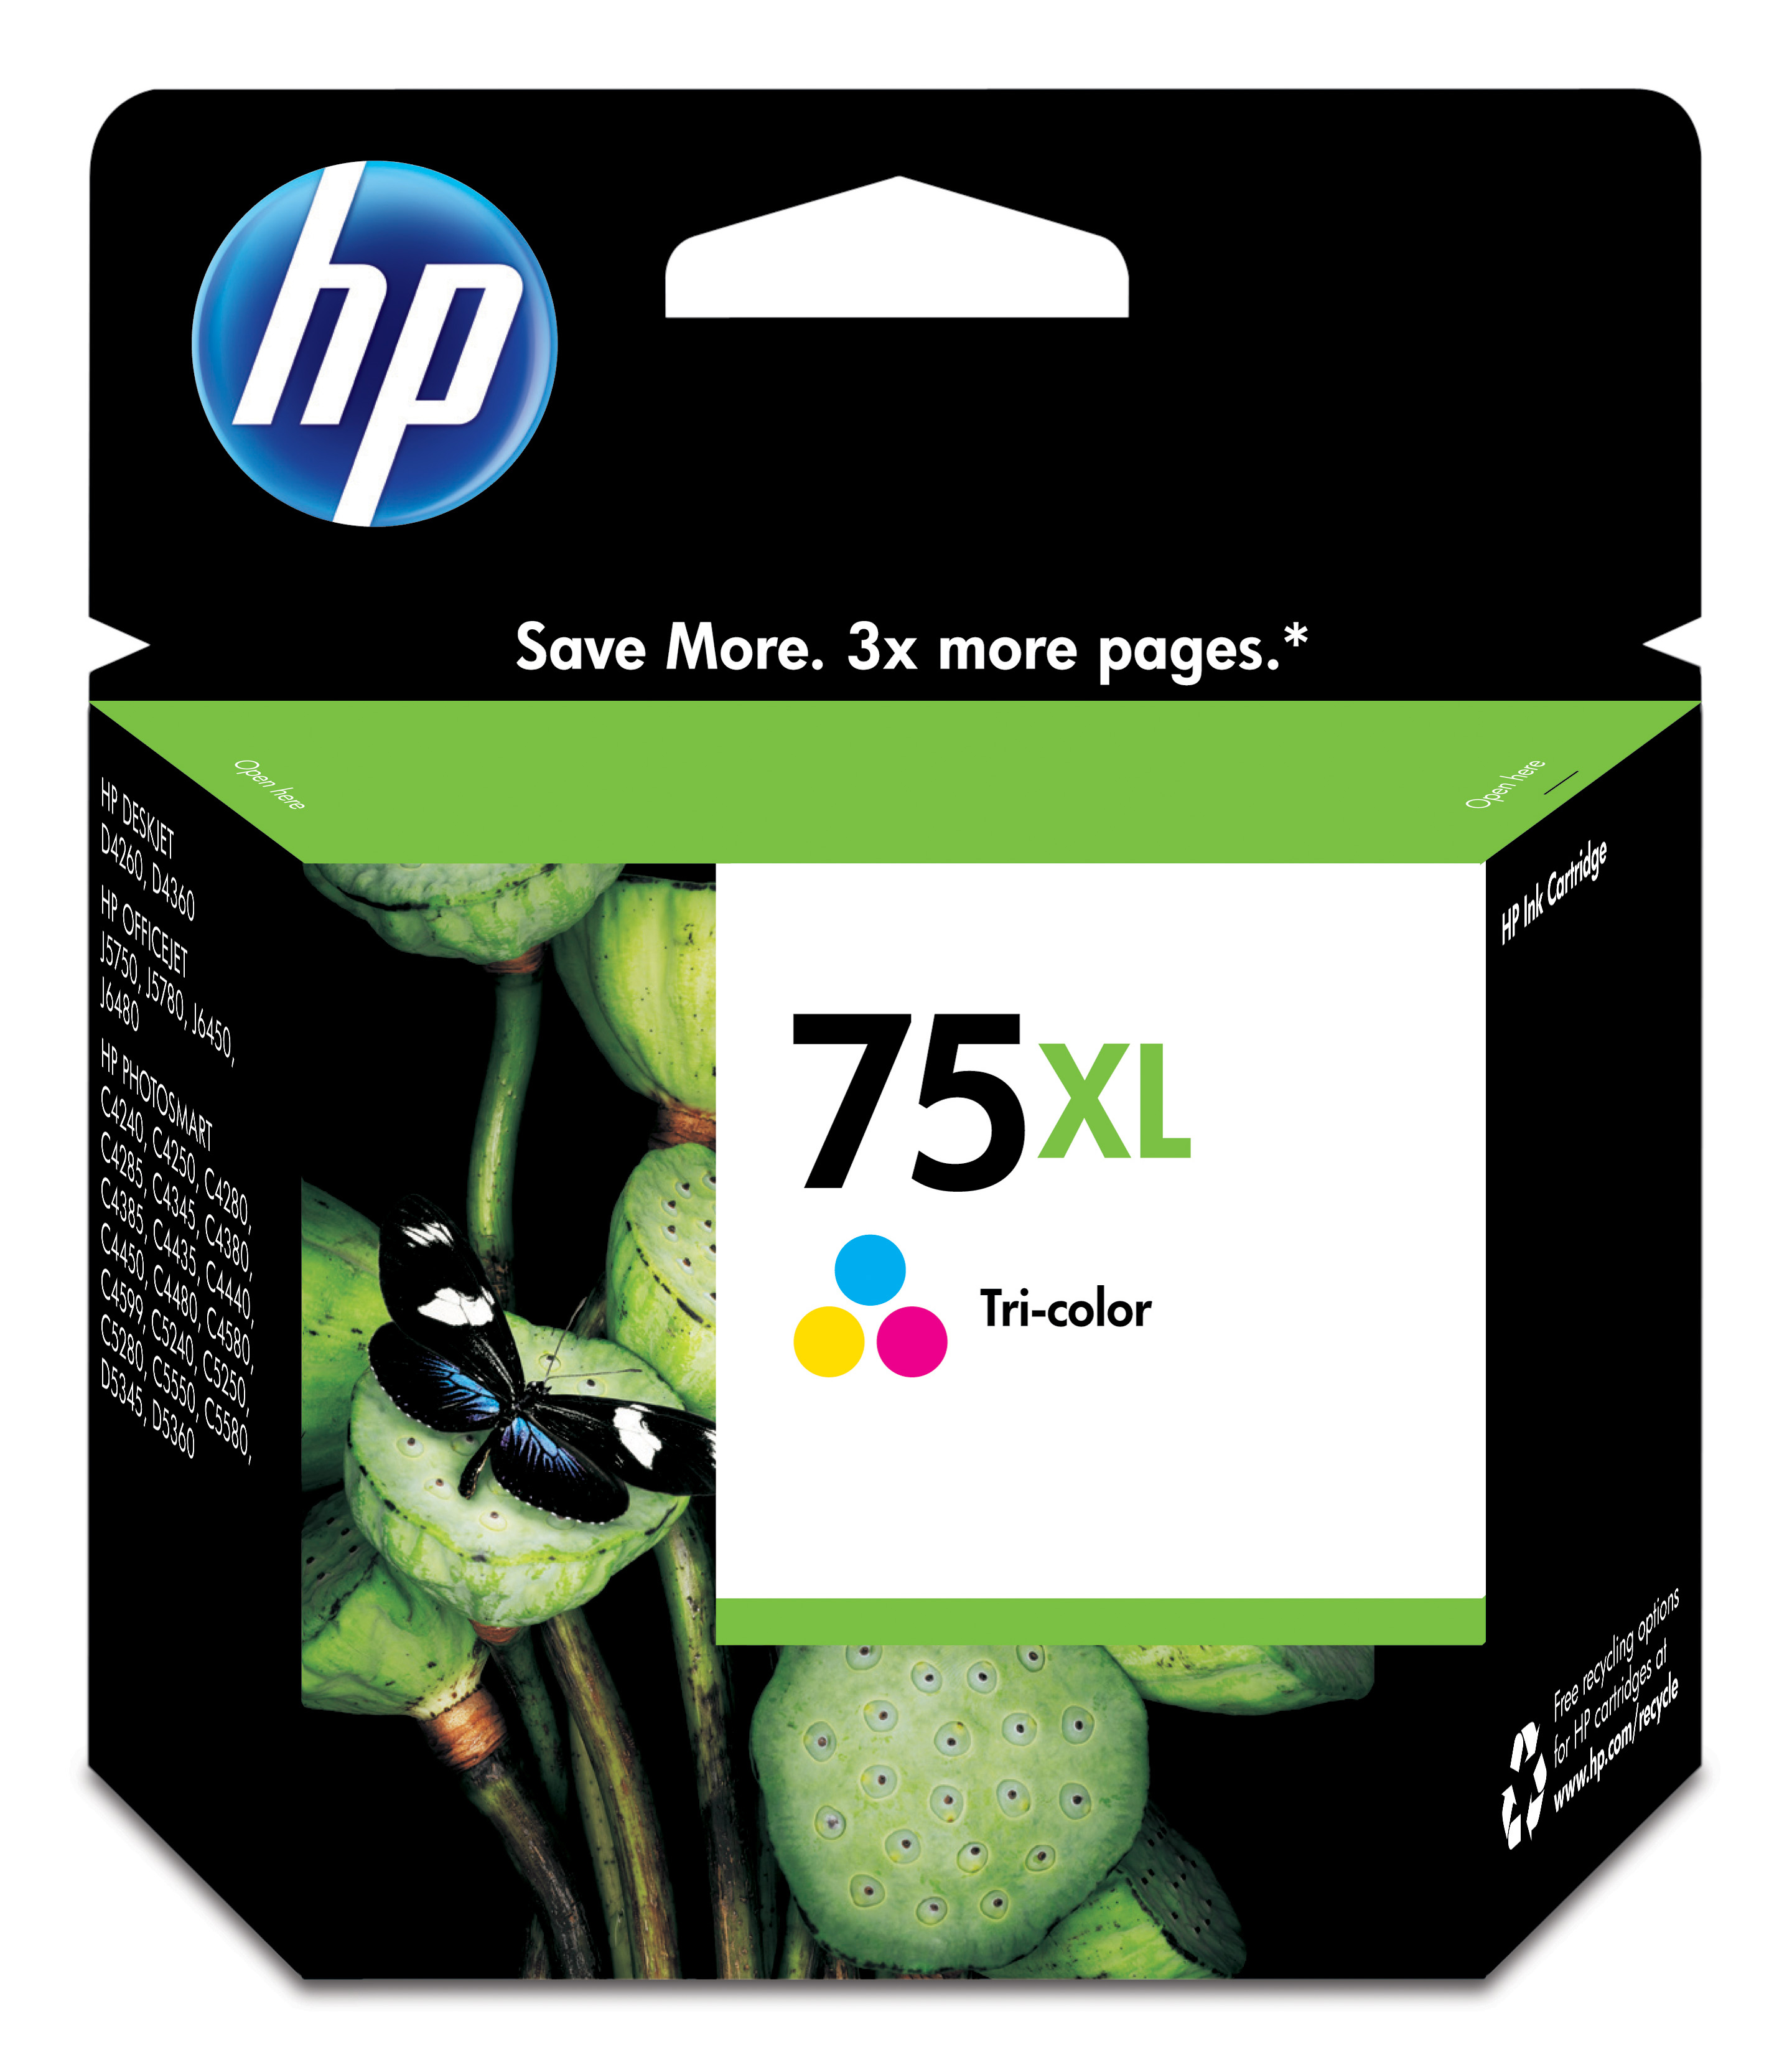 HP 75XL Tri-color Inkjet Print Cartridge Genuine HP Inkjet